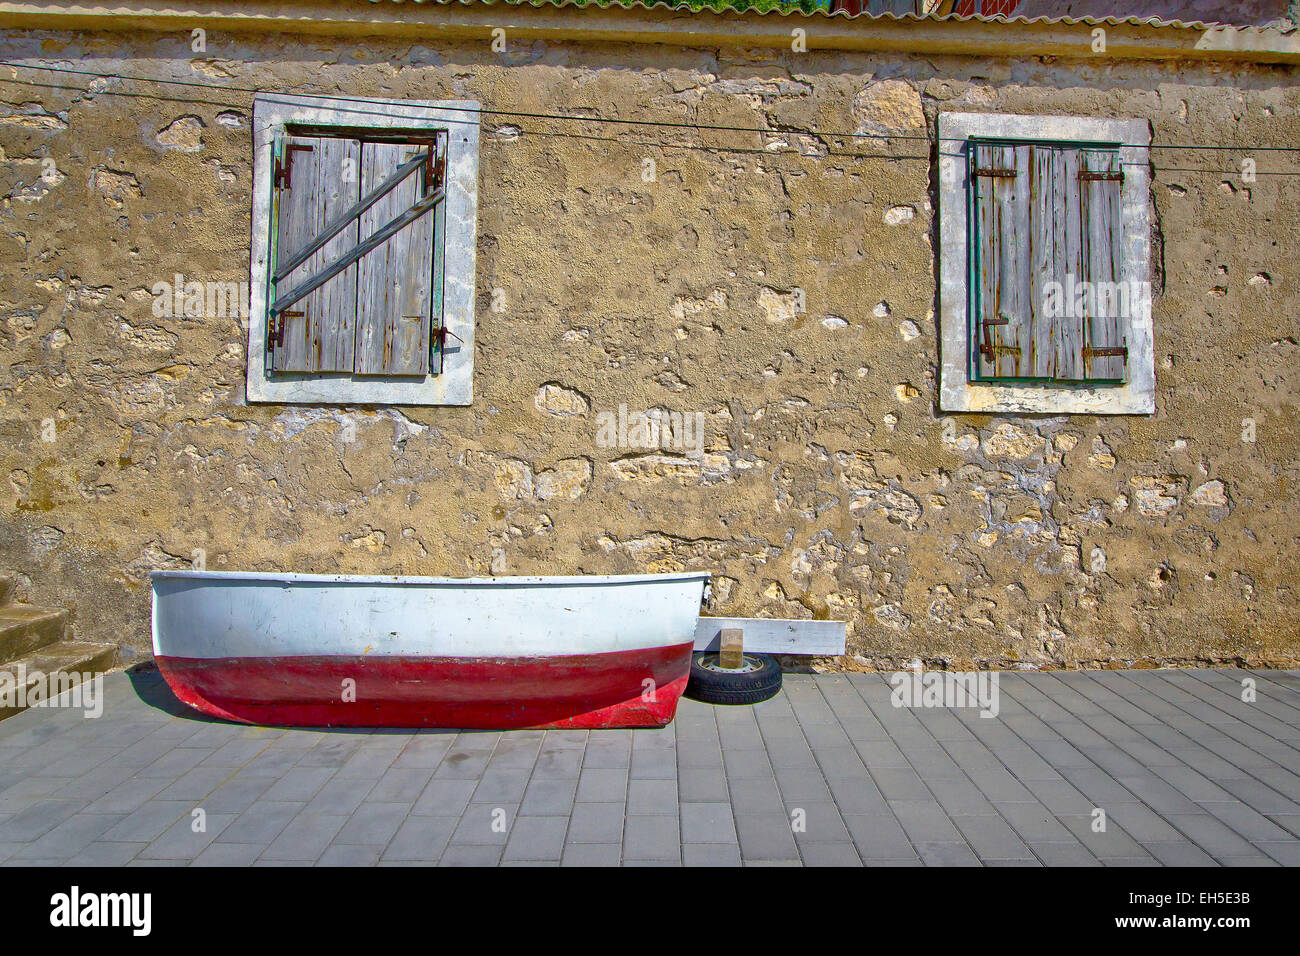 Dalmatinischen alte Boot Straßenansicht, Novigrad, Kroatien Stockfoto